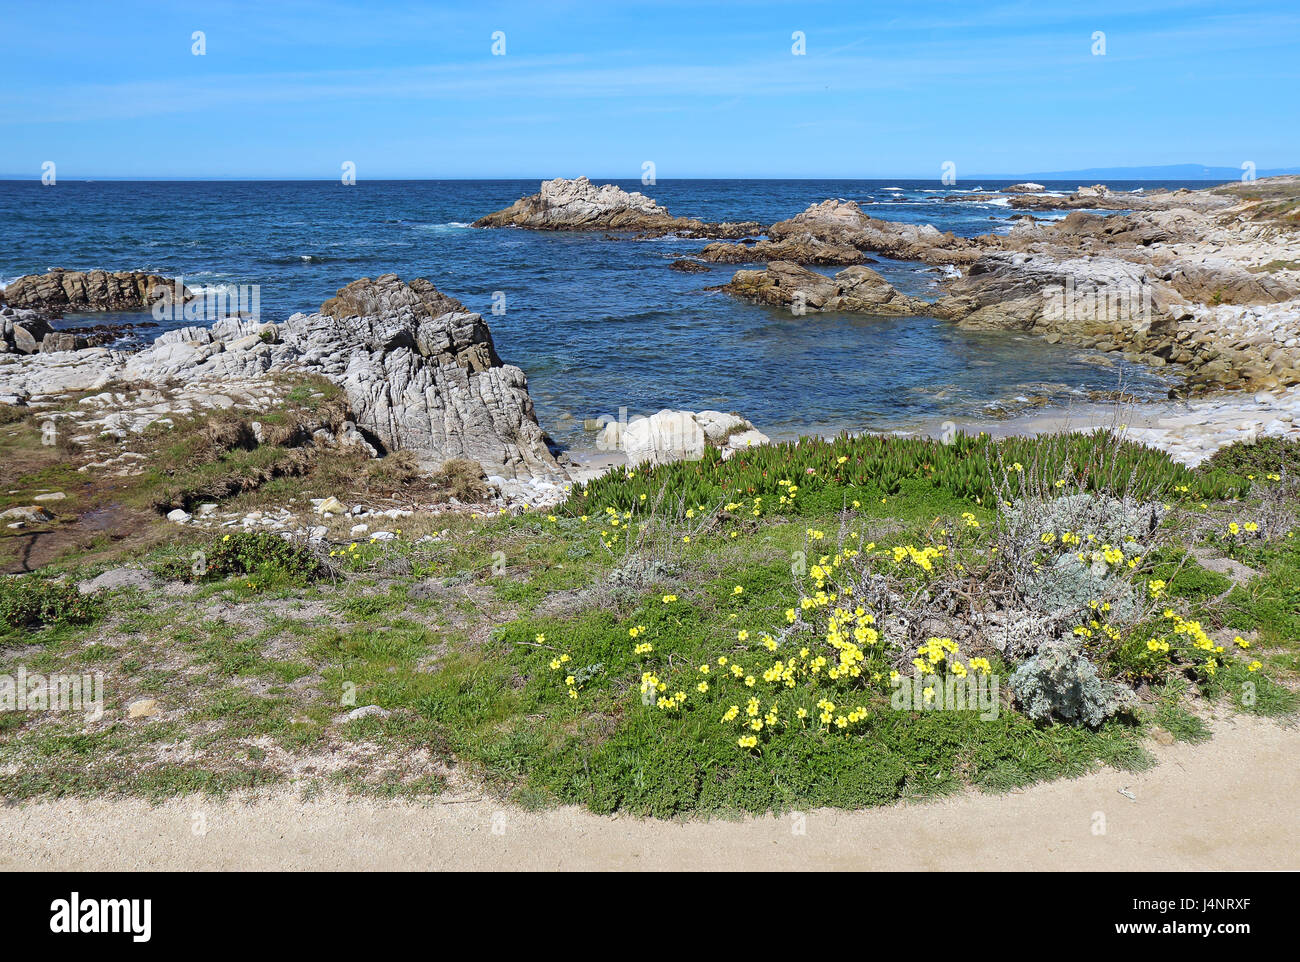 Surf, rocce e Bermuda buttercup (Oxalis pes-caprae) primavera fiori selvatici a Asilomar Beach State Park sulla penisola di Monterey in Pacific Grove, Cali Foto Stock